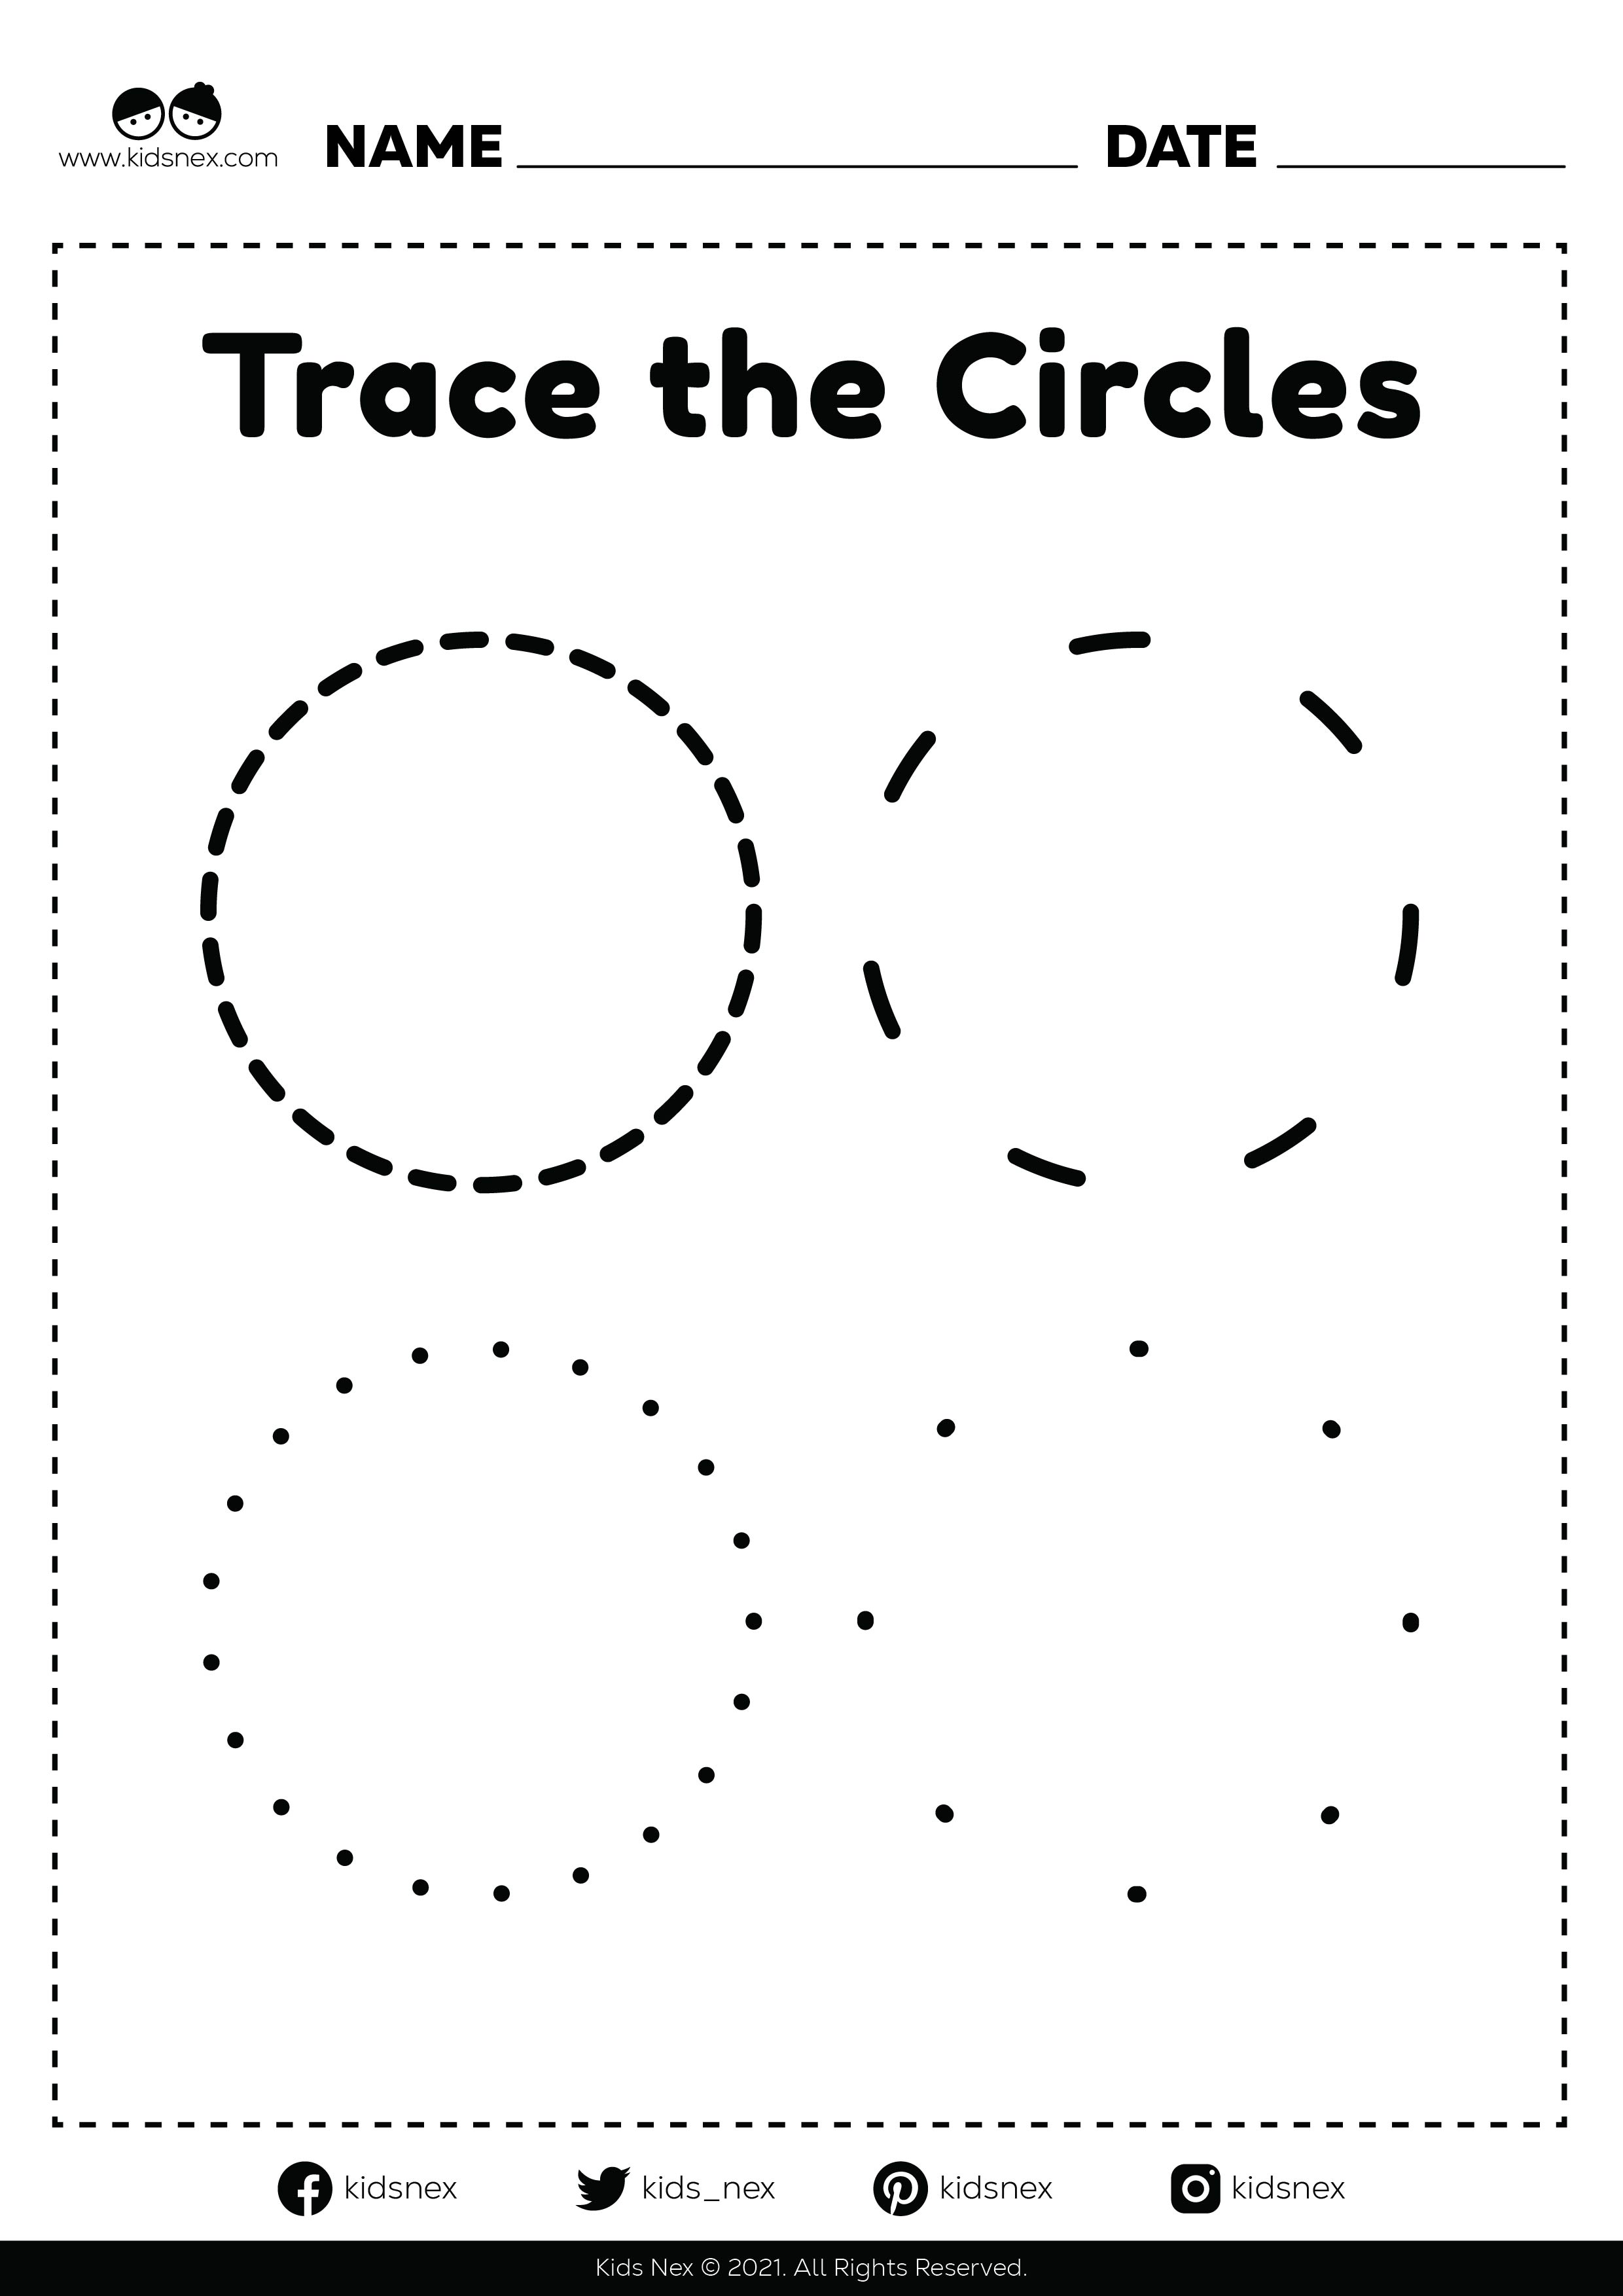 Circle tracing worksheet